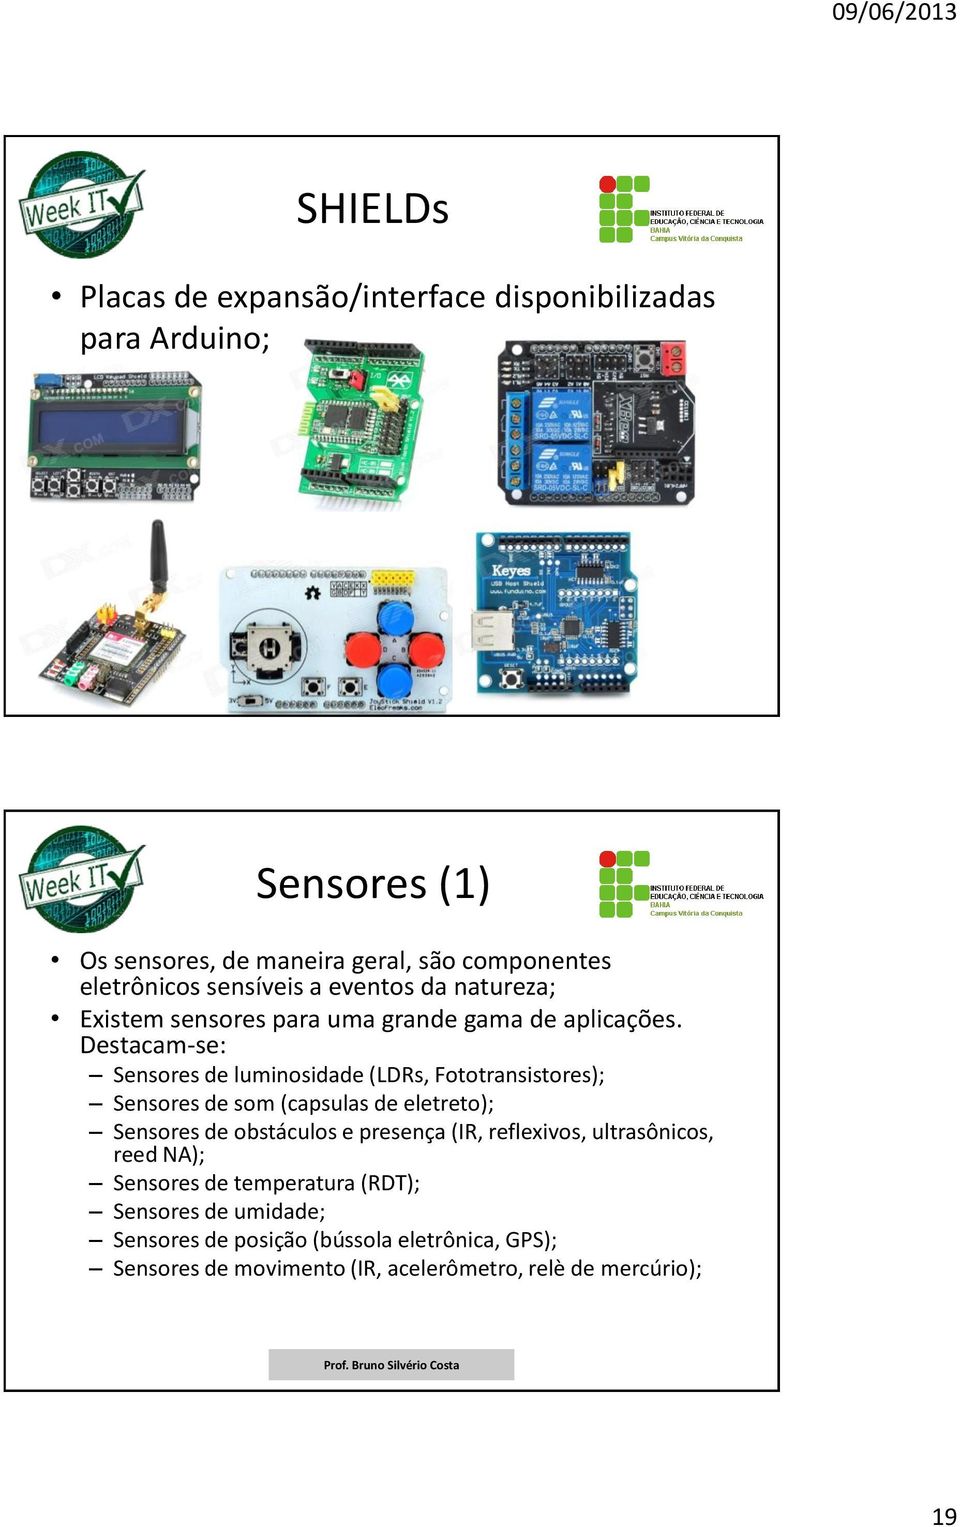 Destacam-se: Sensores de luminosidade (LDRs, Fototransistores); Sensores de som (capsulas de eletreto); Sensores de obstáculos e presença